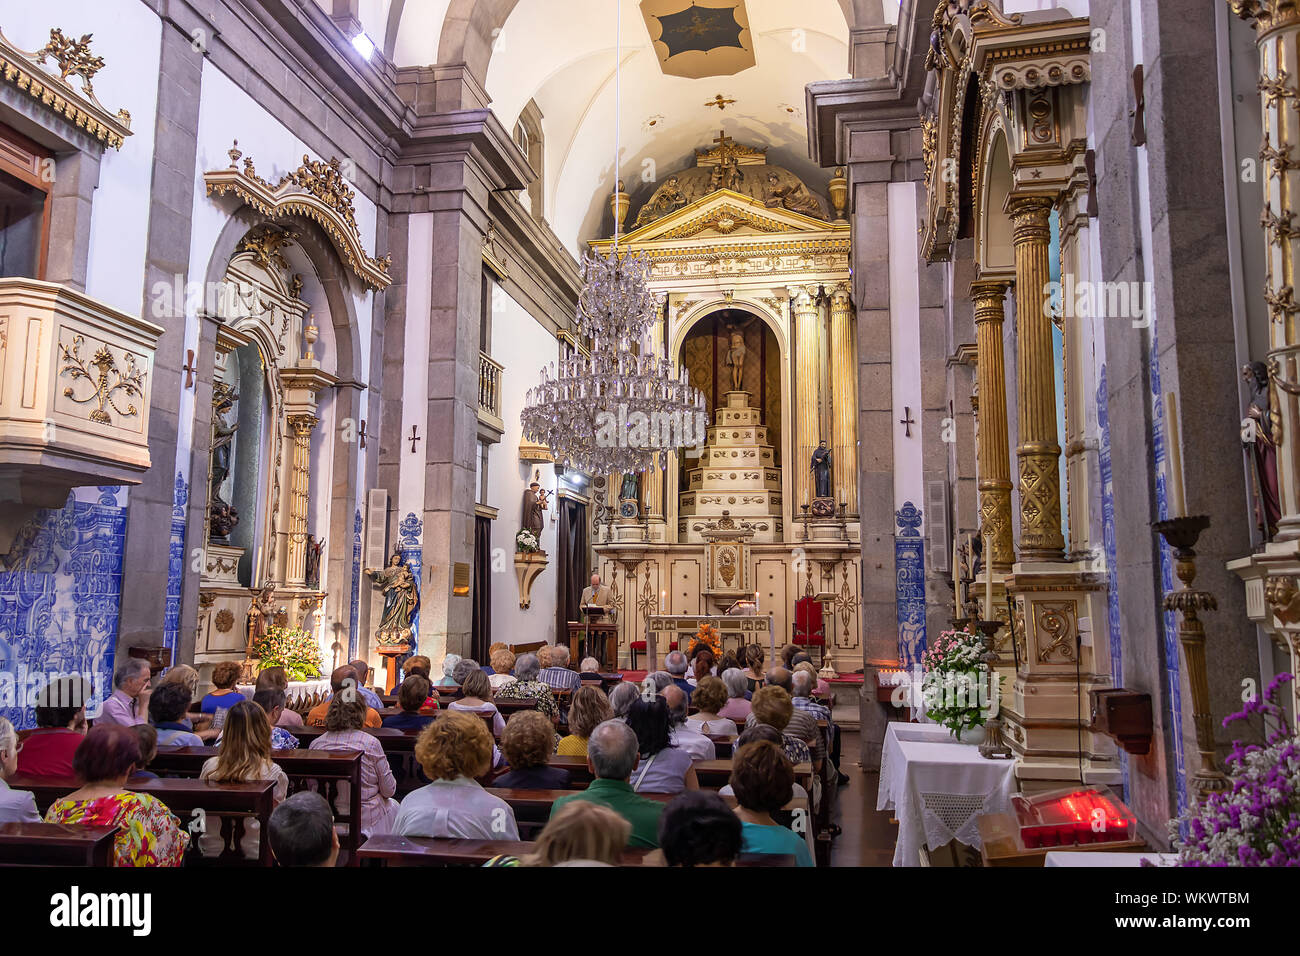 Porto, Portugal, July 19, 2019:  Interior of the Capela das Almas (the Chapel of Souls) in Porto, Portugal Stock Photo